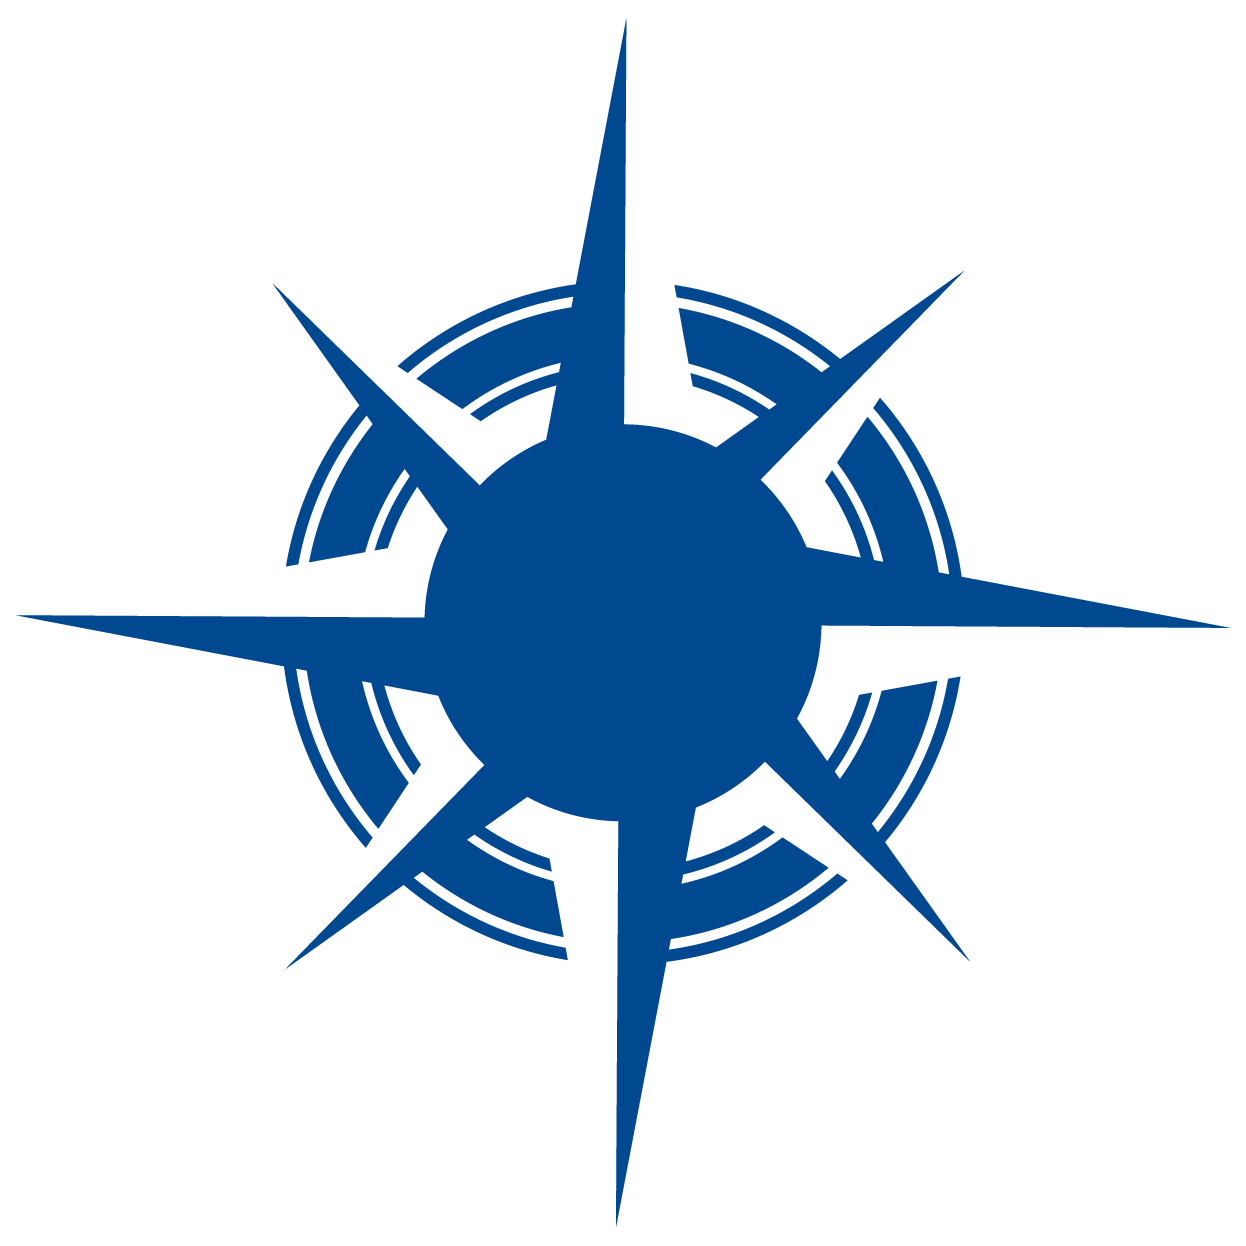 BISM Logo, blue compass